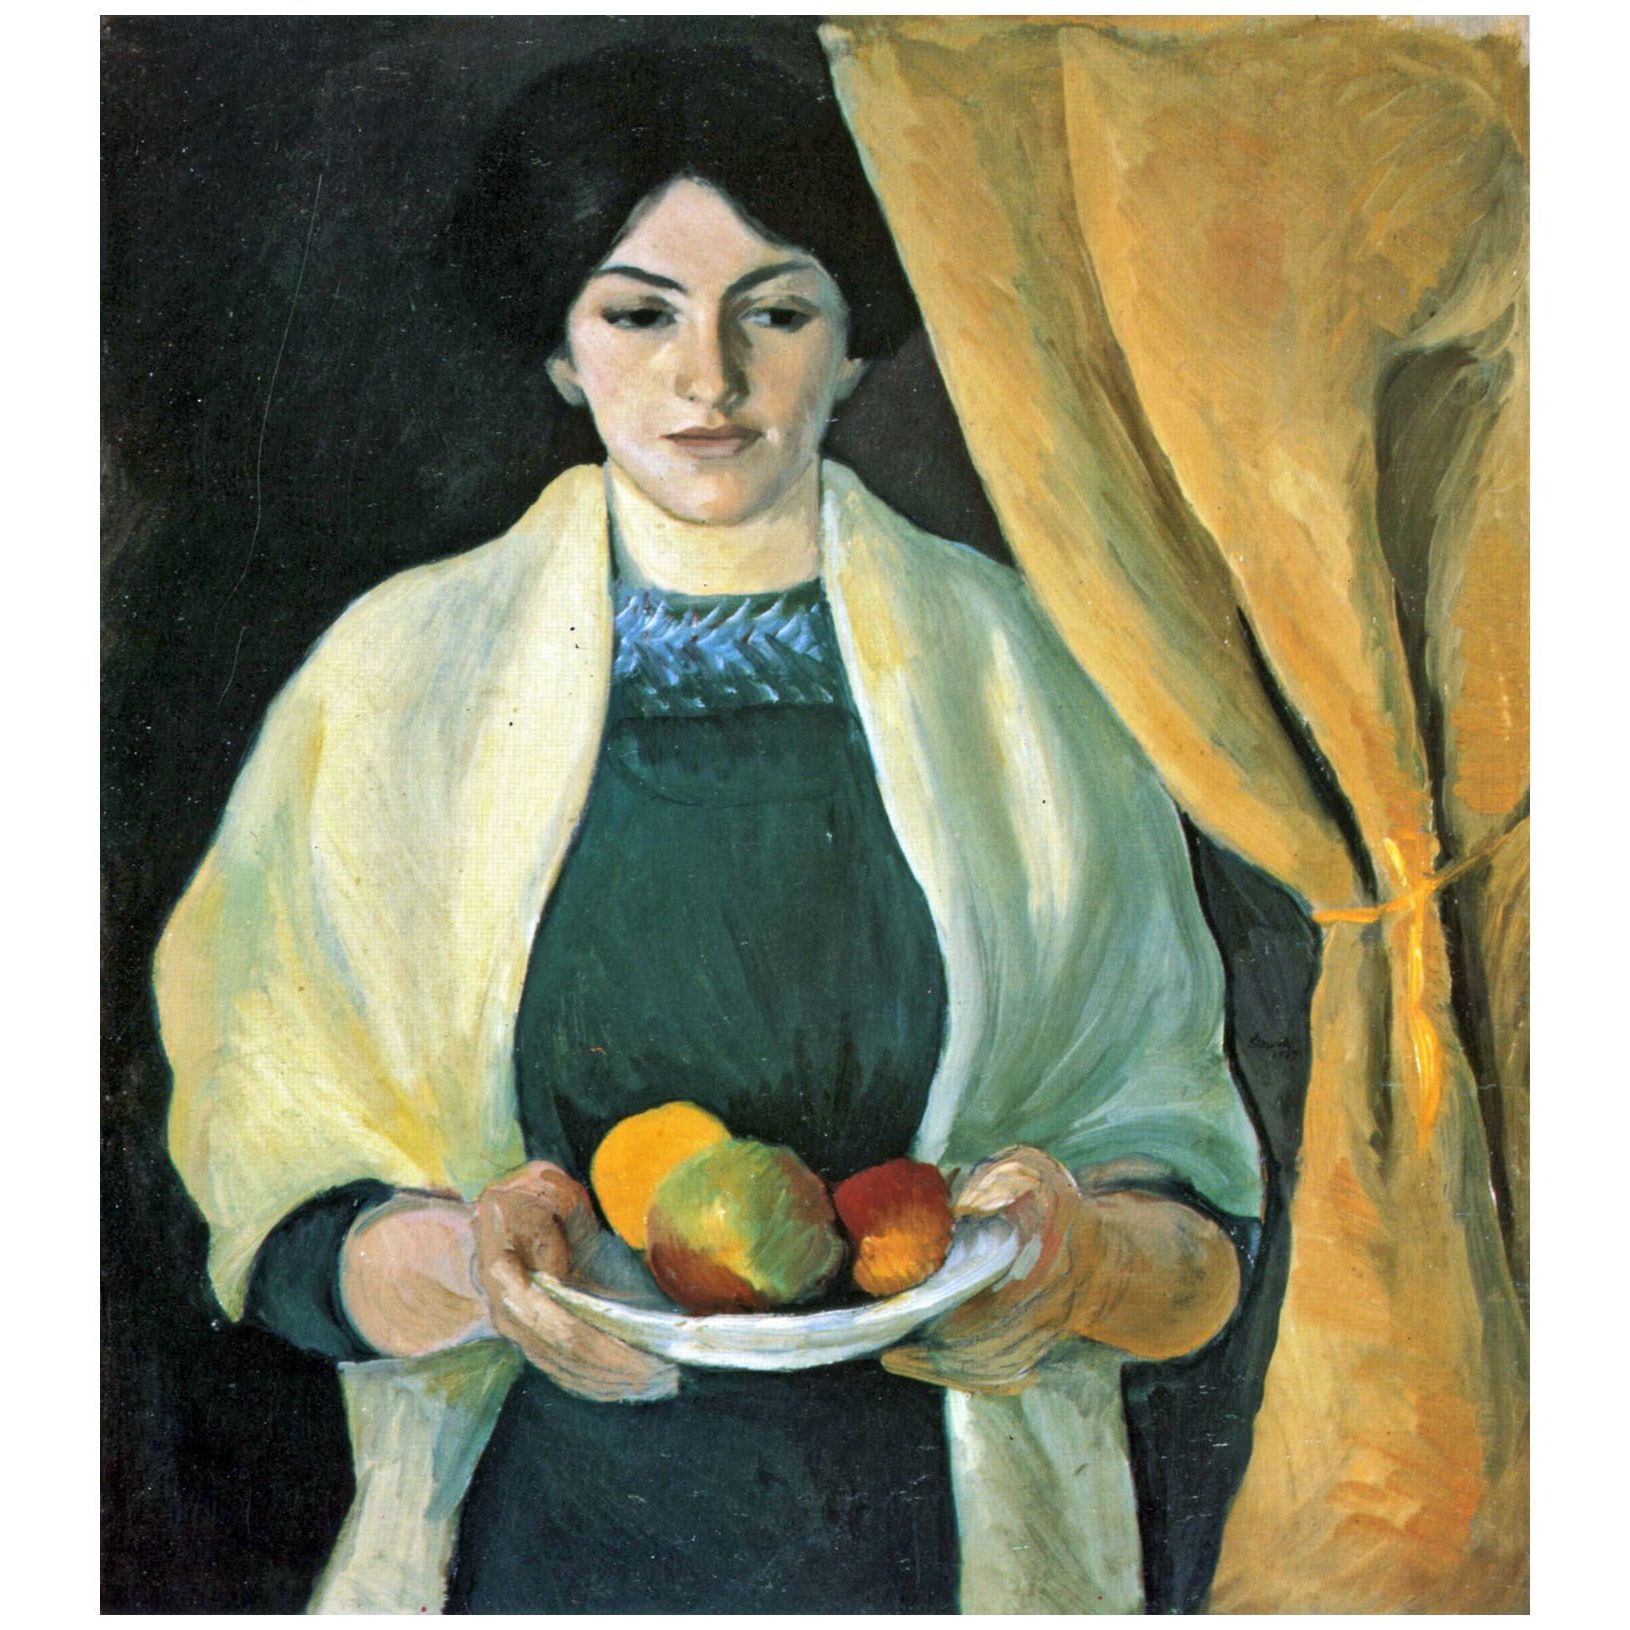 August Macke. Porträt mit Äpfeln. 1909. Lenbachhaus Munchen